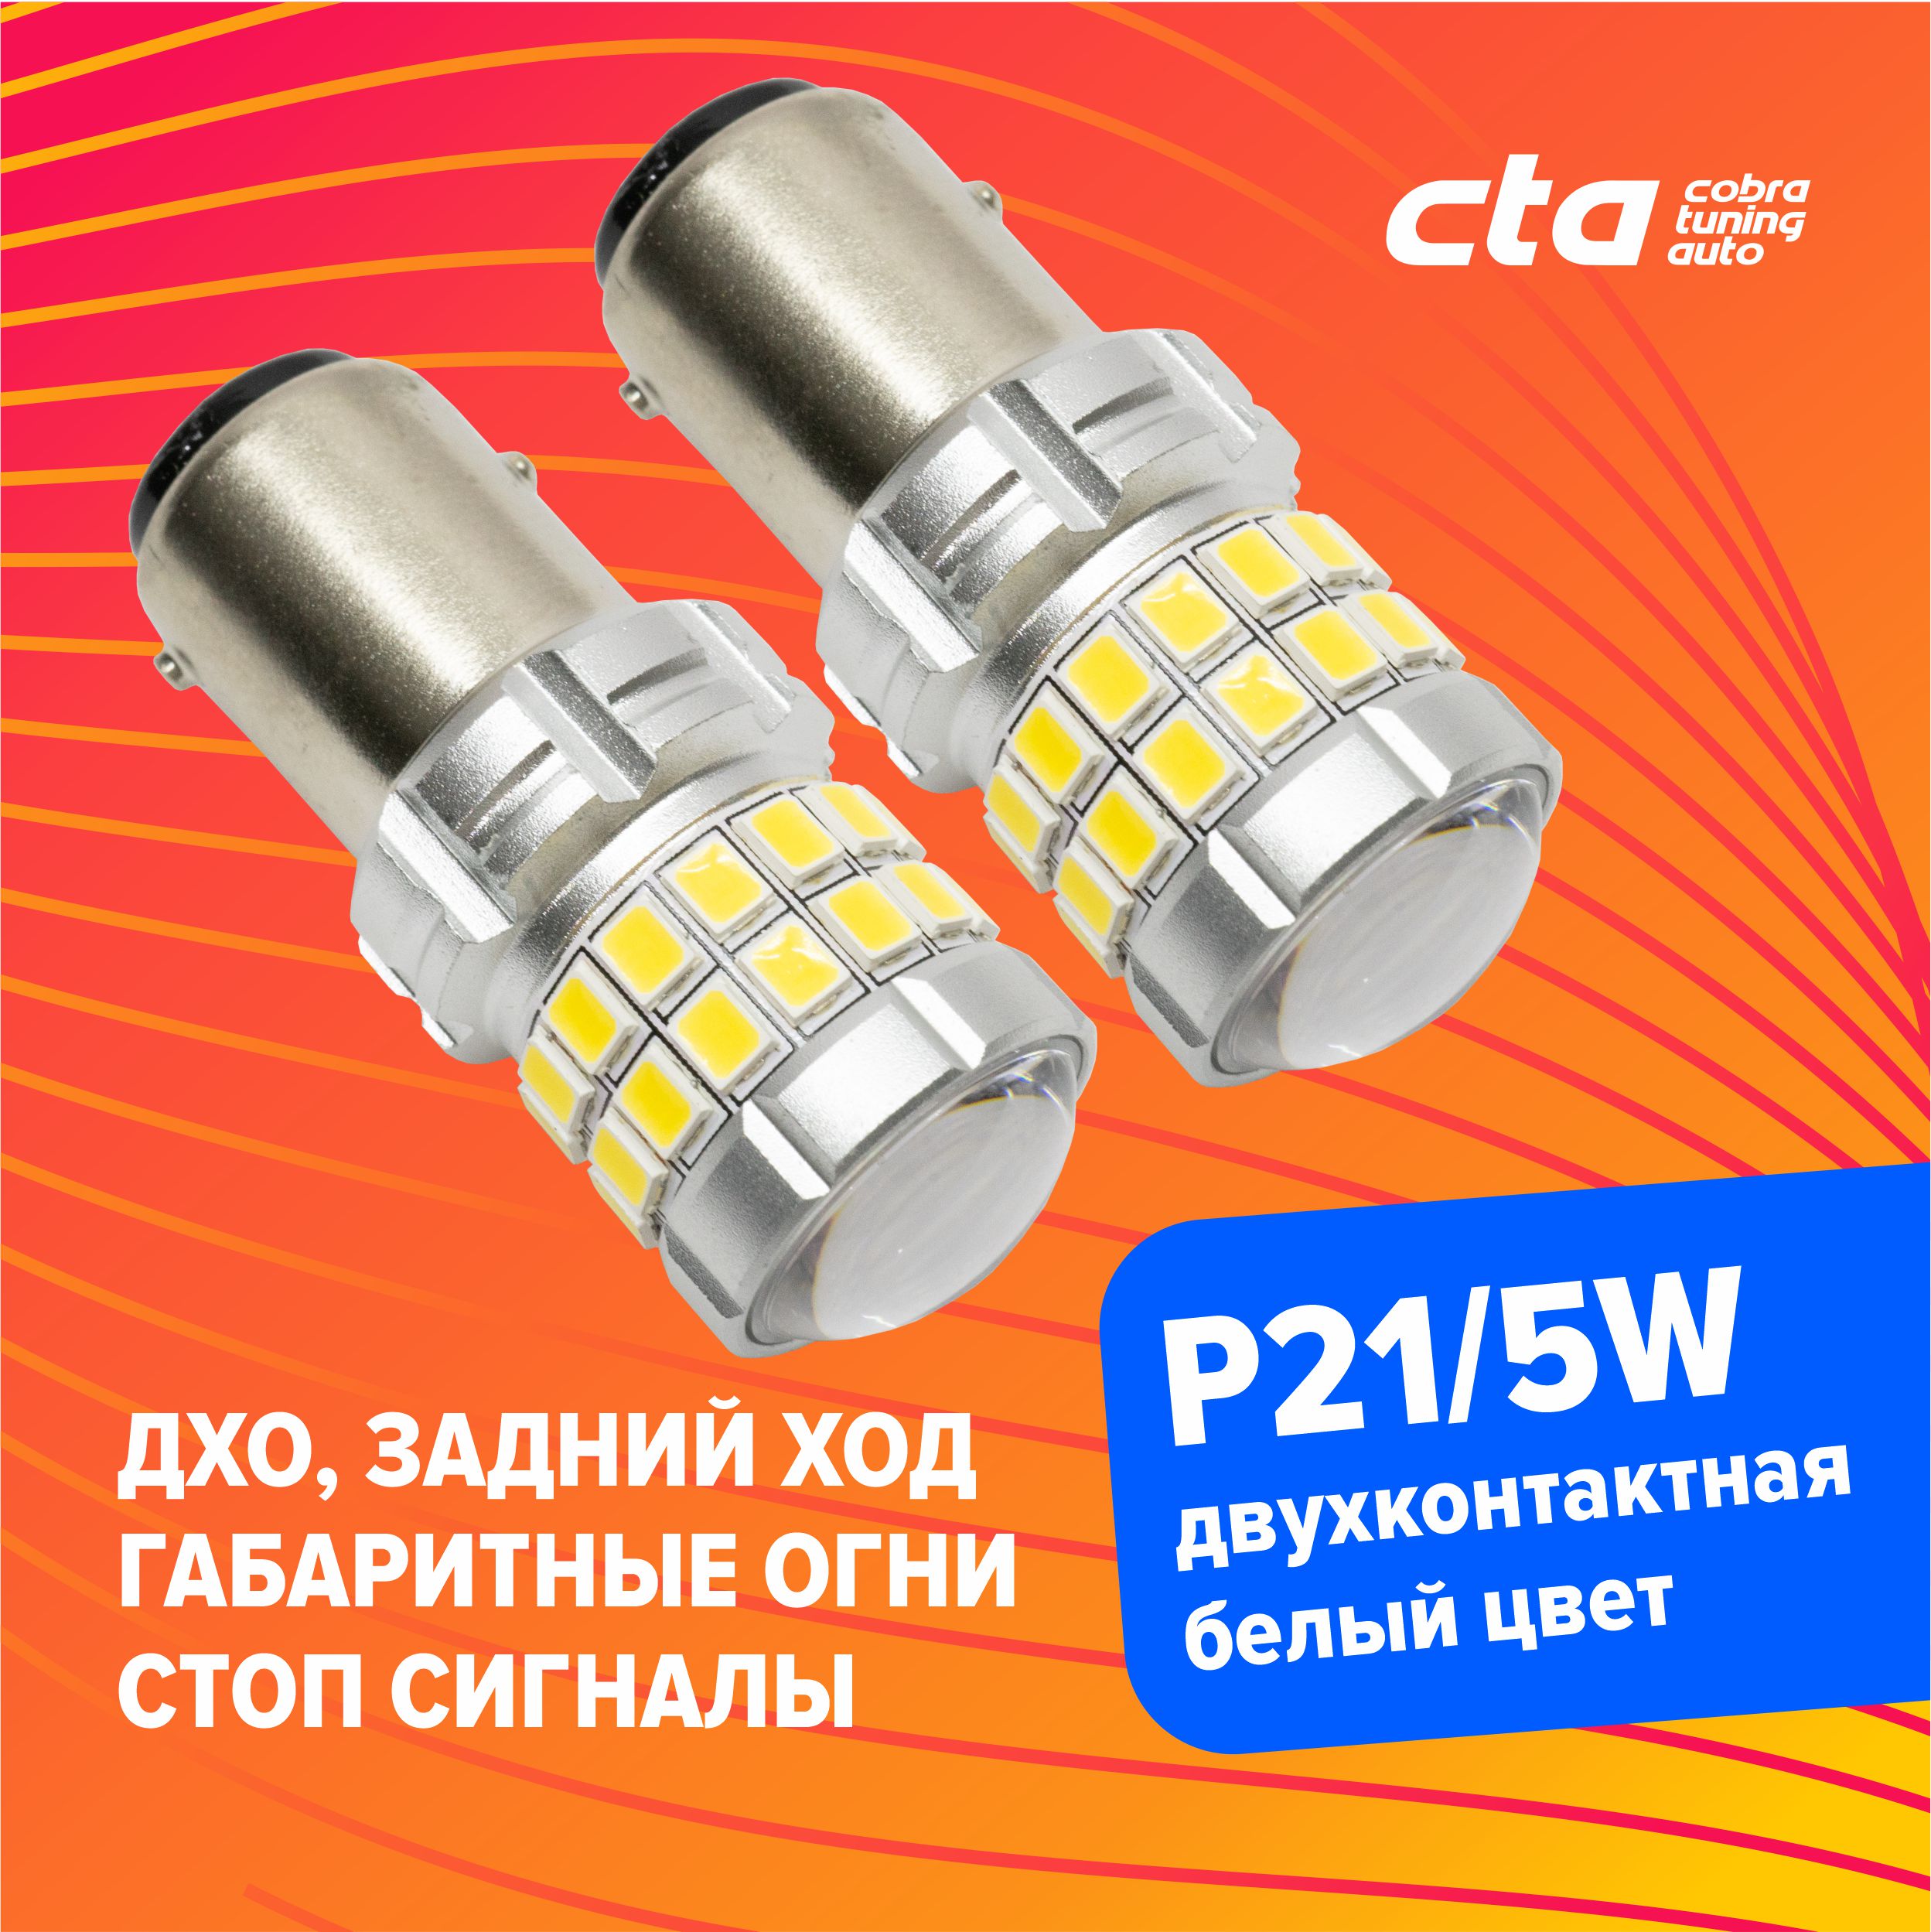 Светодиодные лампы для автомобиля Cobra Tuning Auto p21/5w G13-33SMD-1157-W белый цвет 2шт